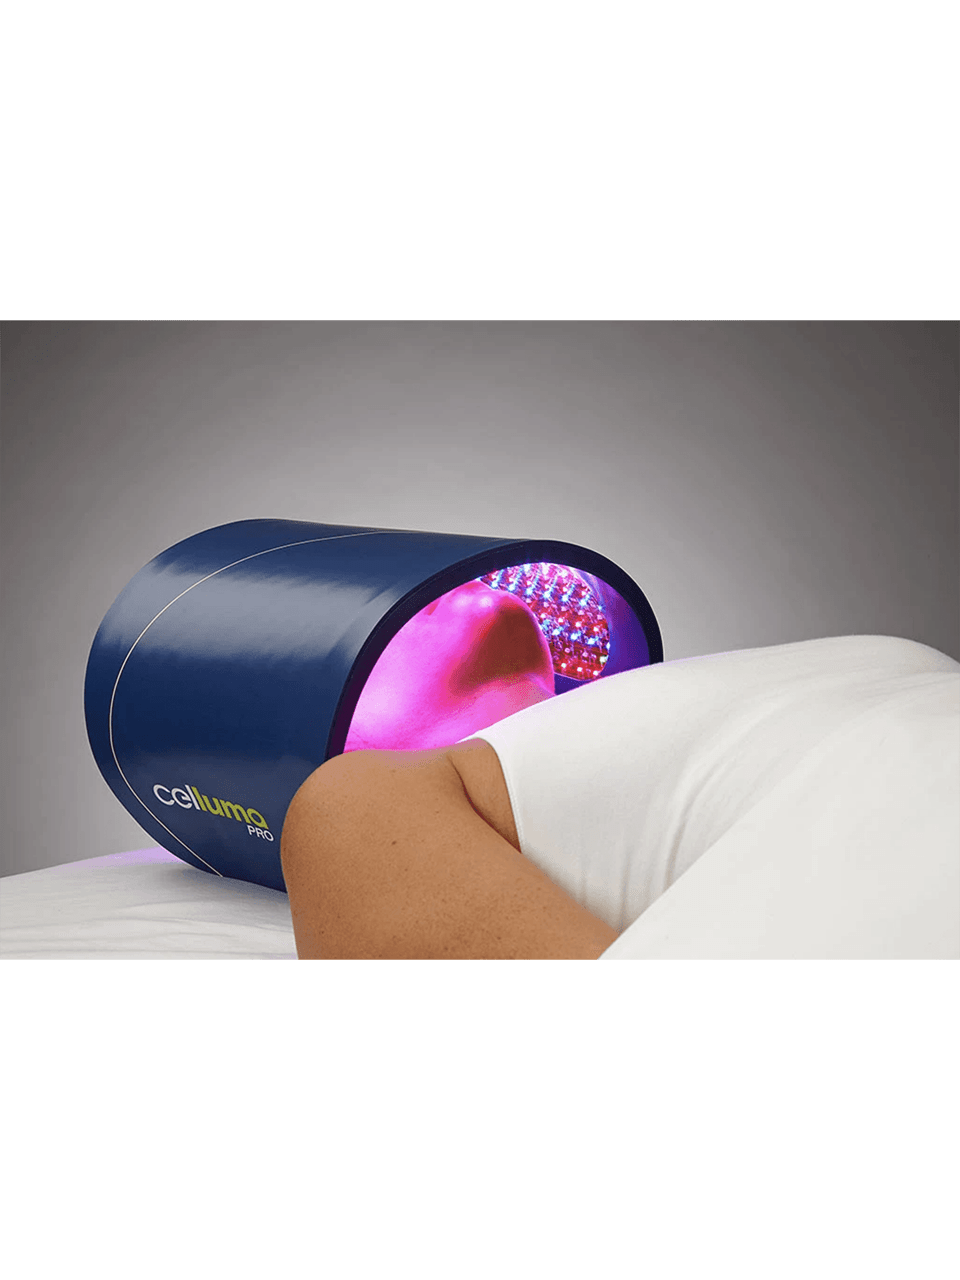 Celluma Pro At-Home Light Therapy Device TOOLS & ACCESSORIES Celluma 